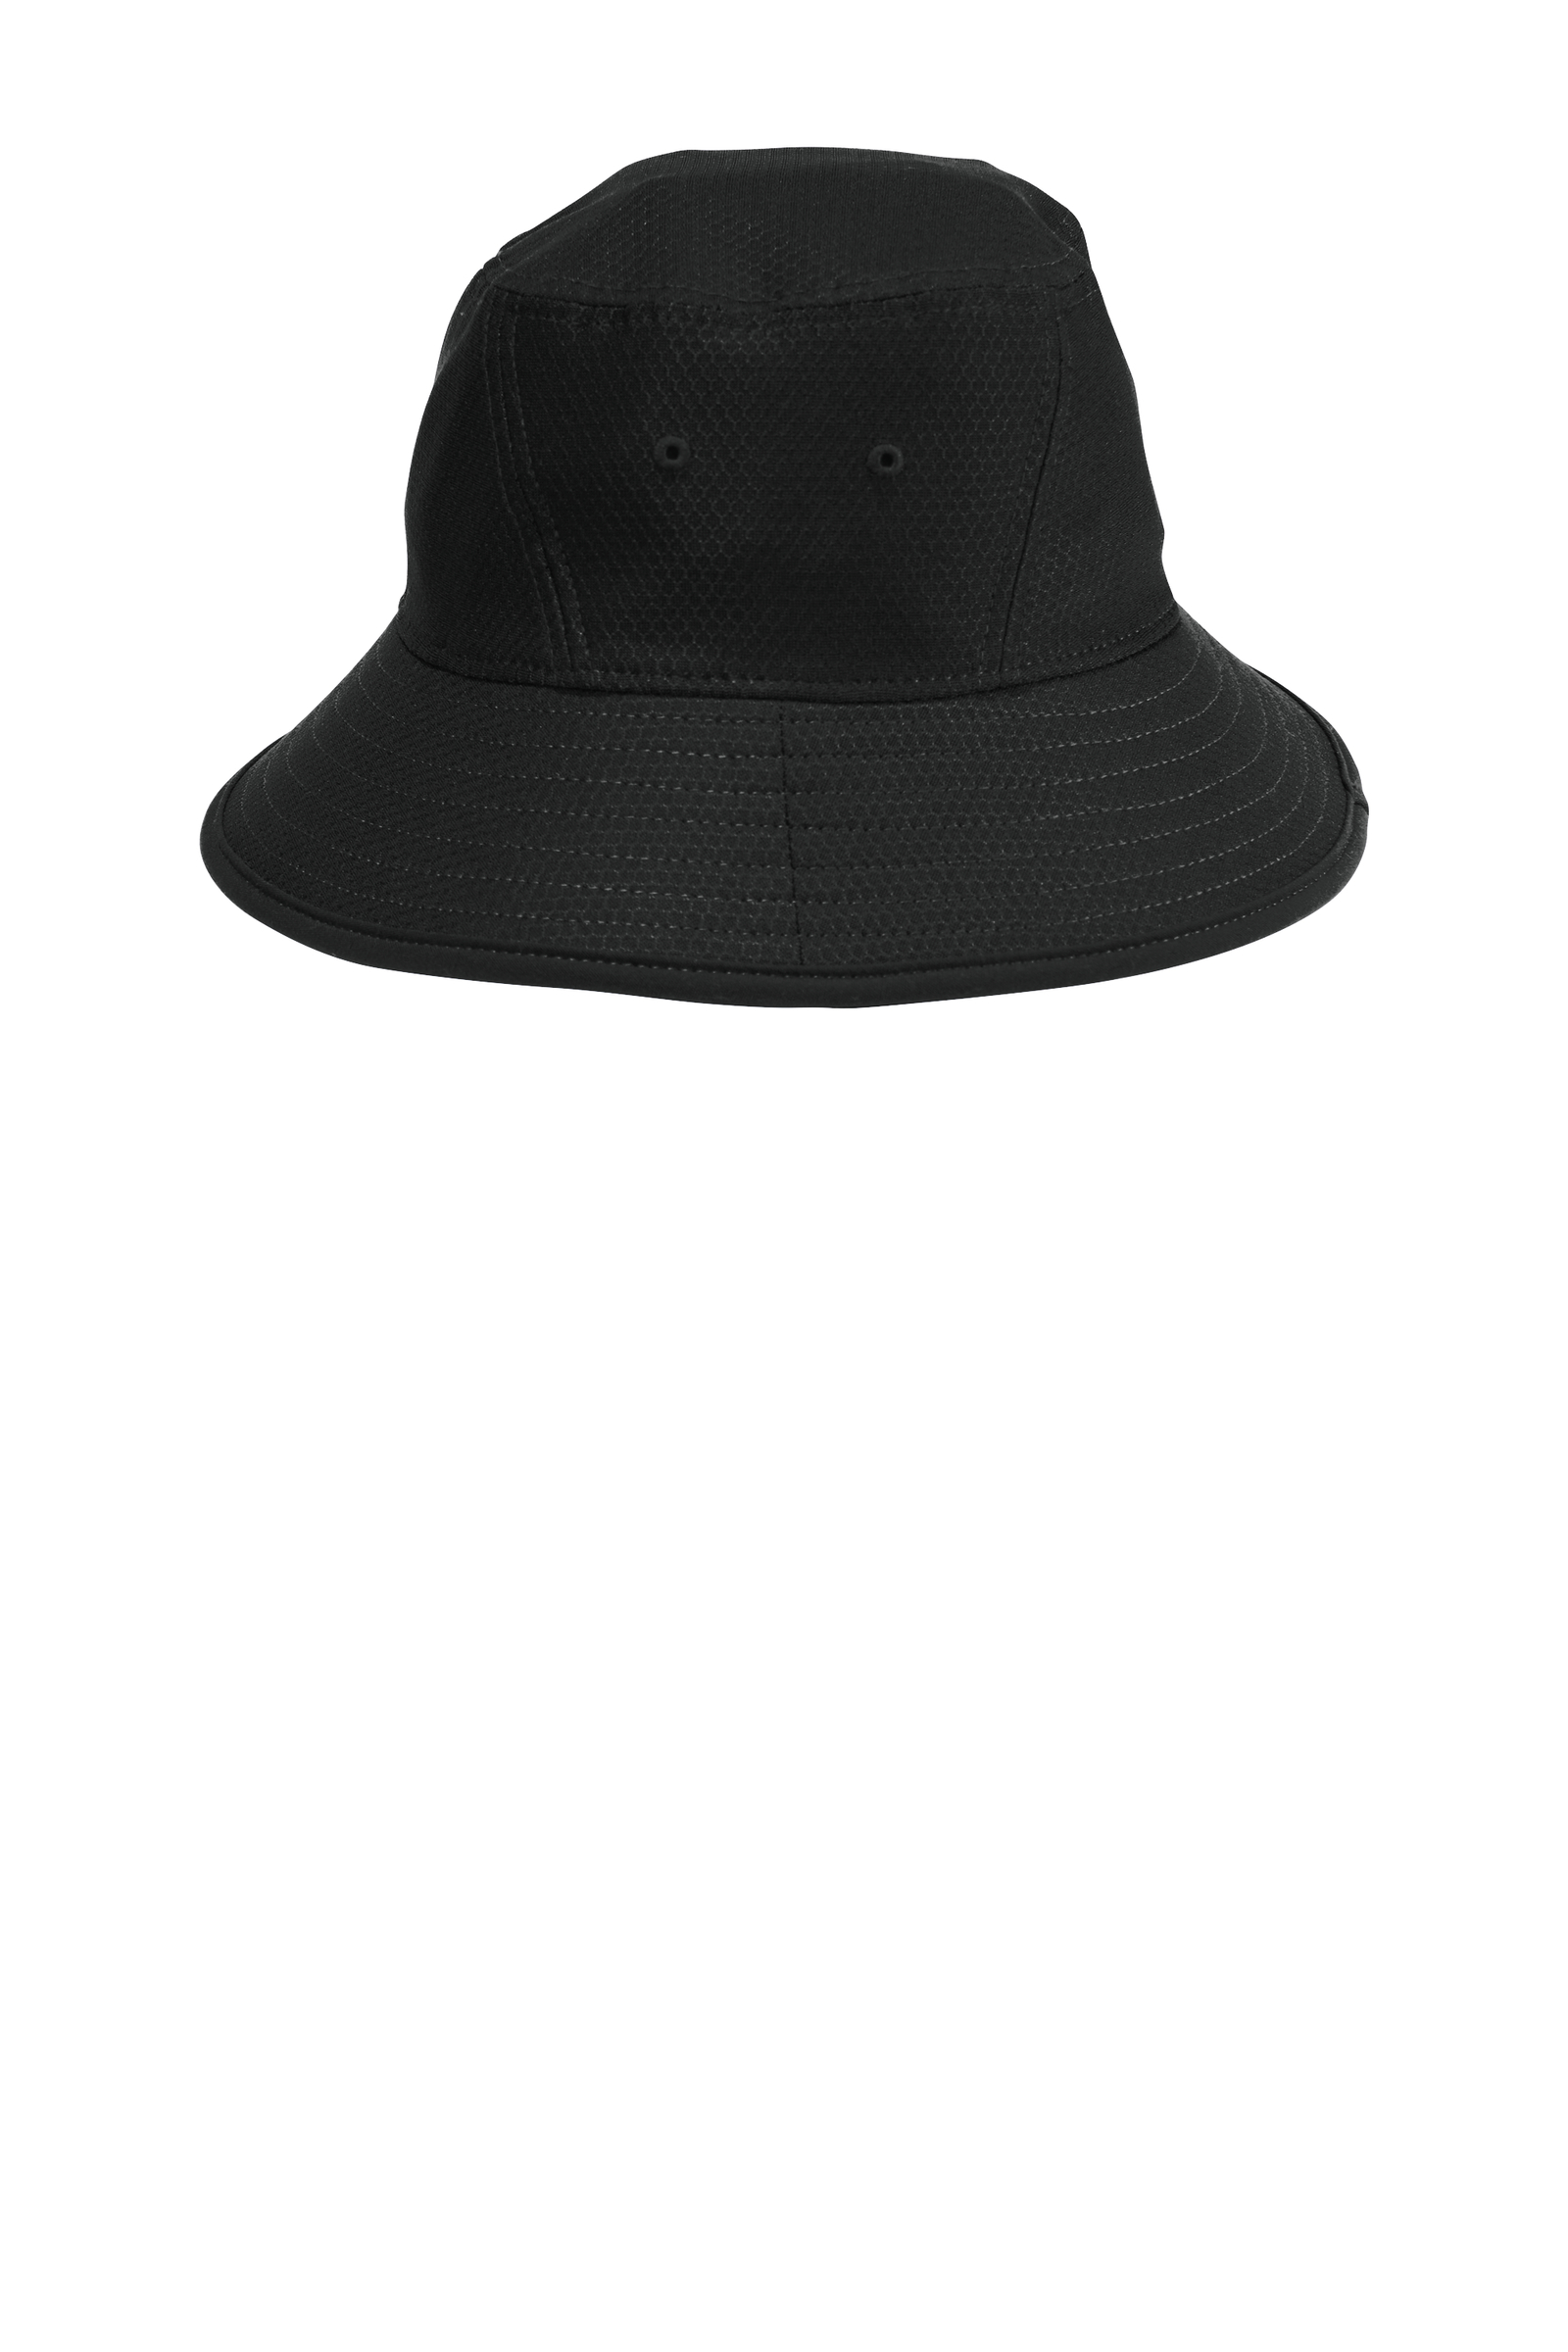 New Era Embroidered Hex Era Bucket Hat